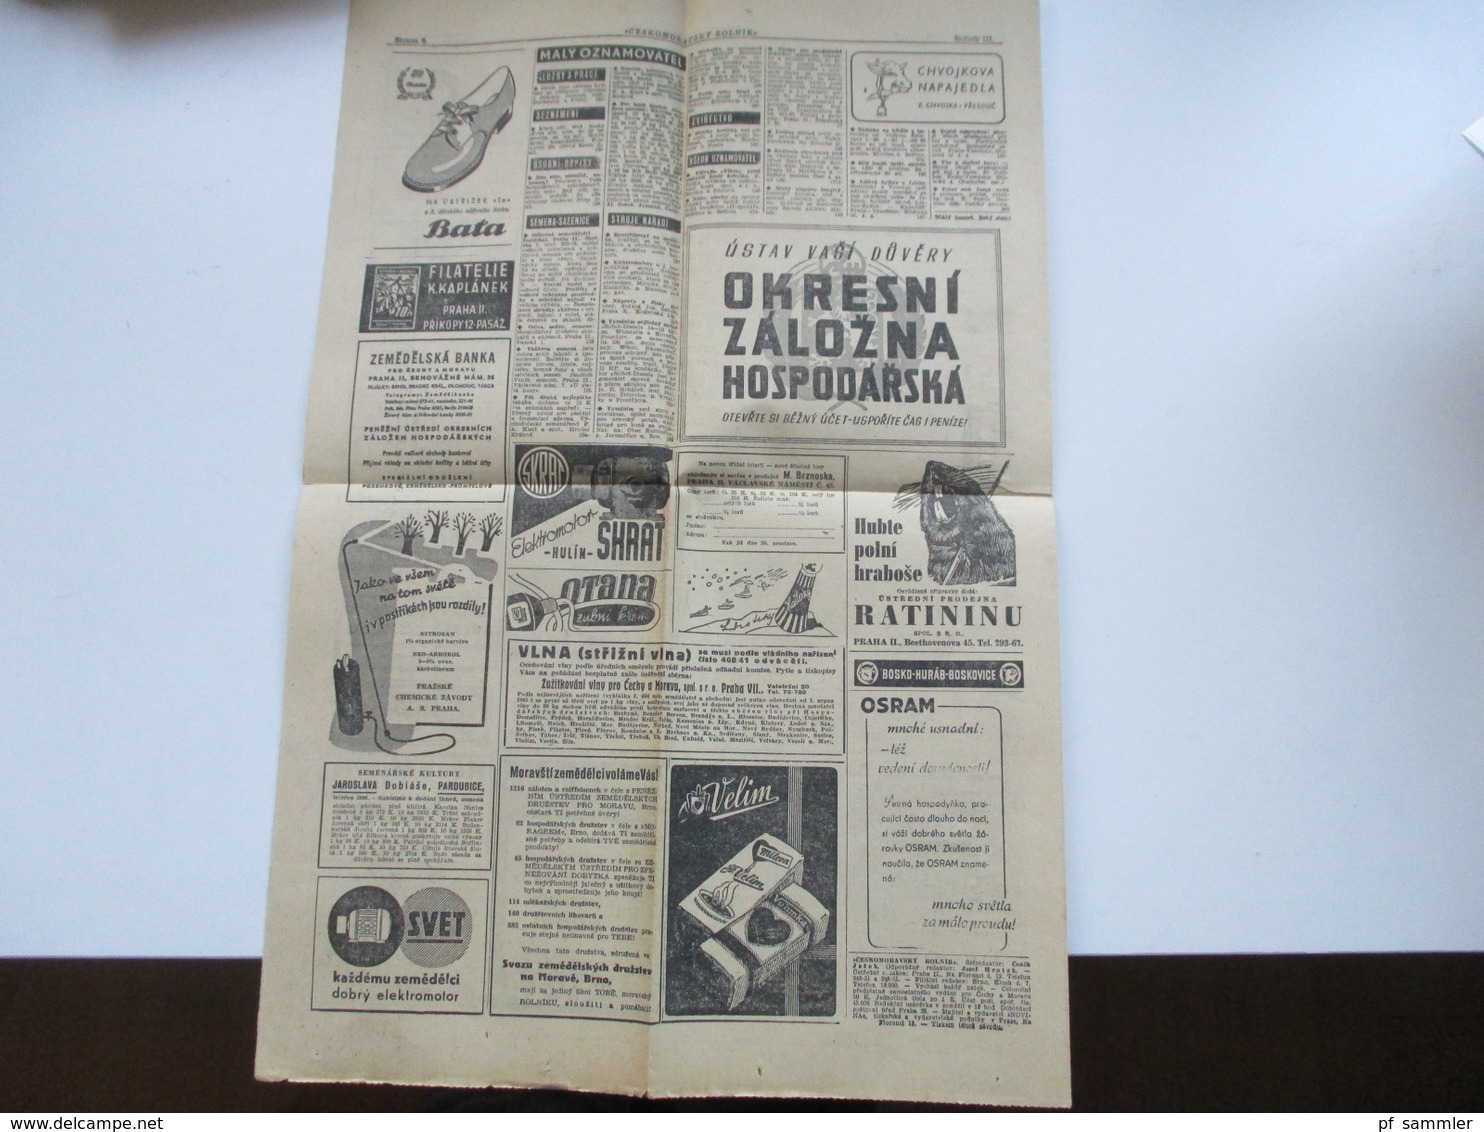 Böhmen u. Mähren 1944 Nr. 43 EF auf Streifband auf kompletter Zeitung vom 17.11.1944